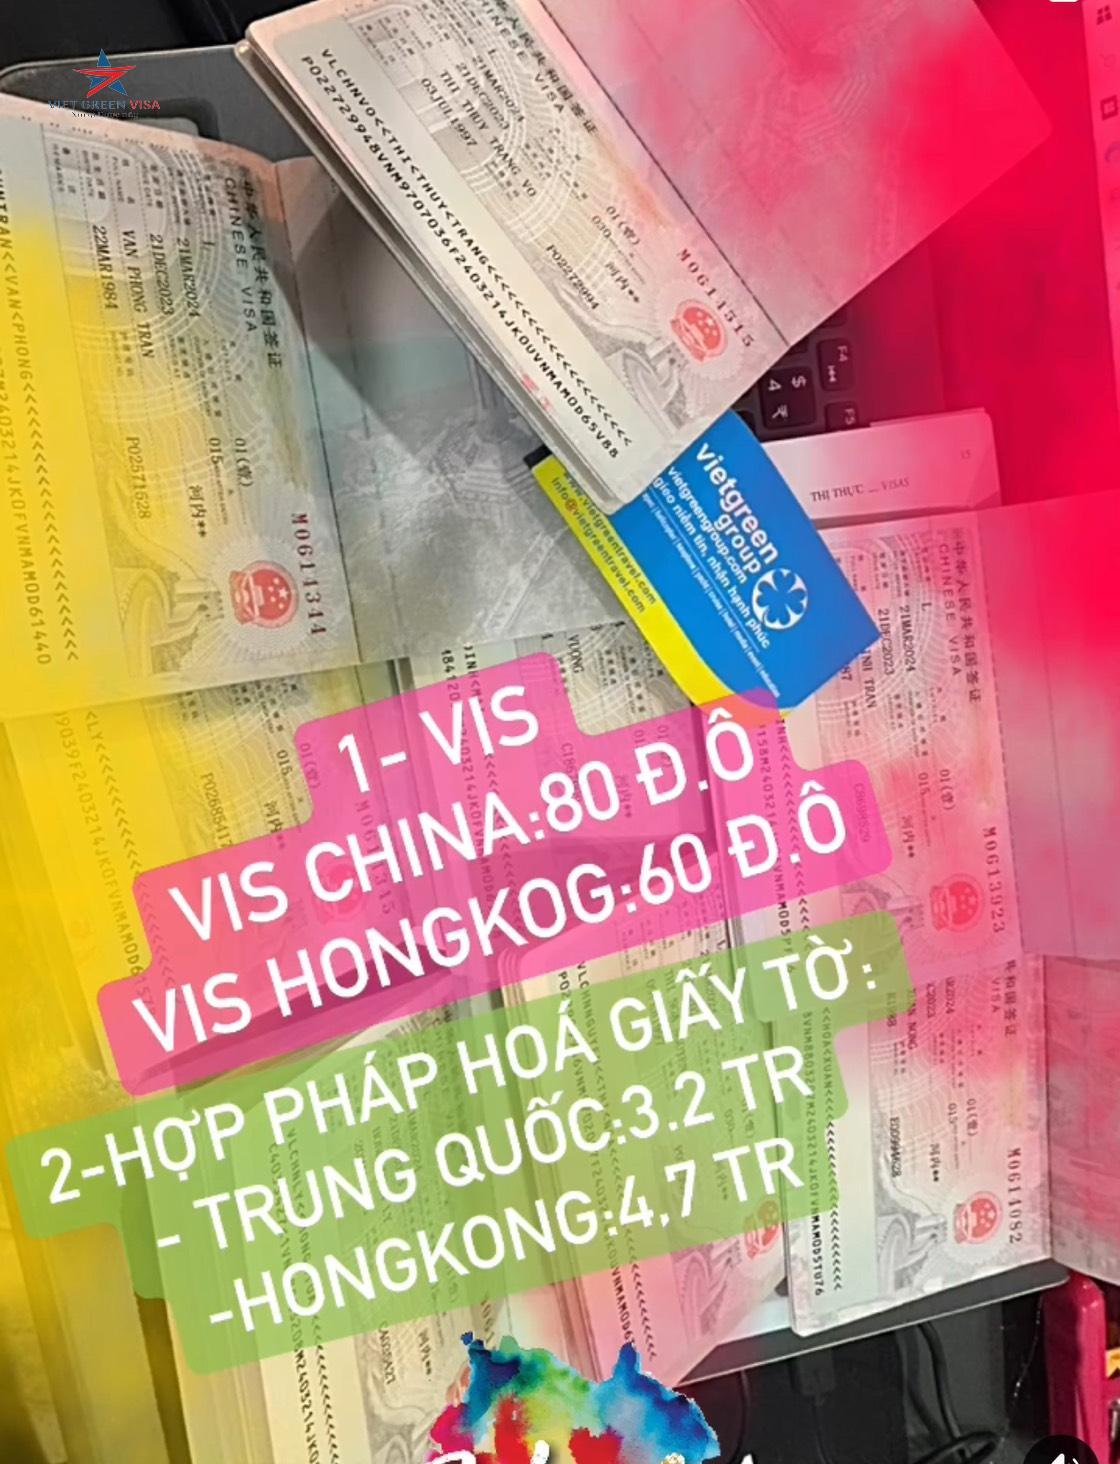 Dịch vụ xin visa Trung Quốc tại Tây Ninh chuyên nghiệp